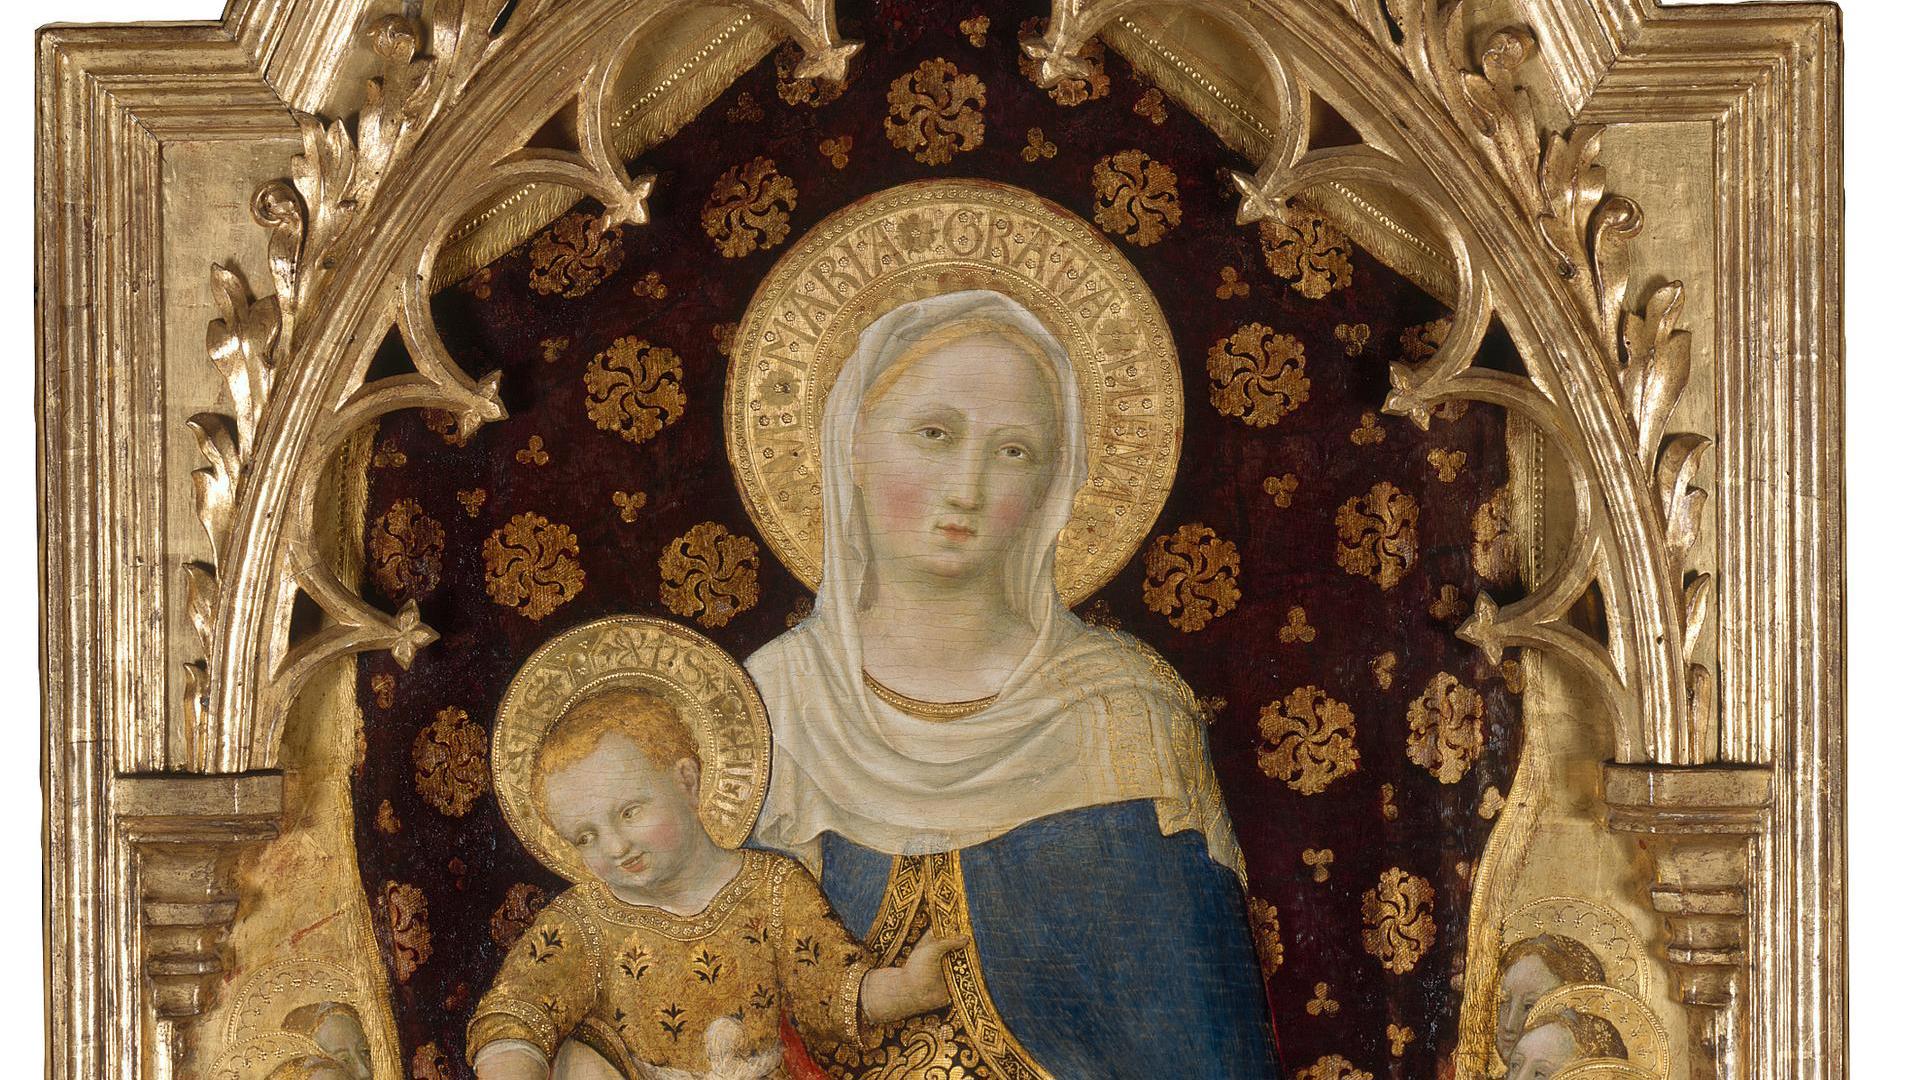 The Quaratesi Madonna by Gentile da Fabriano